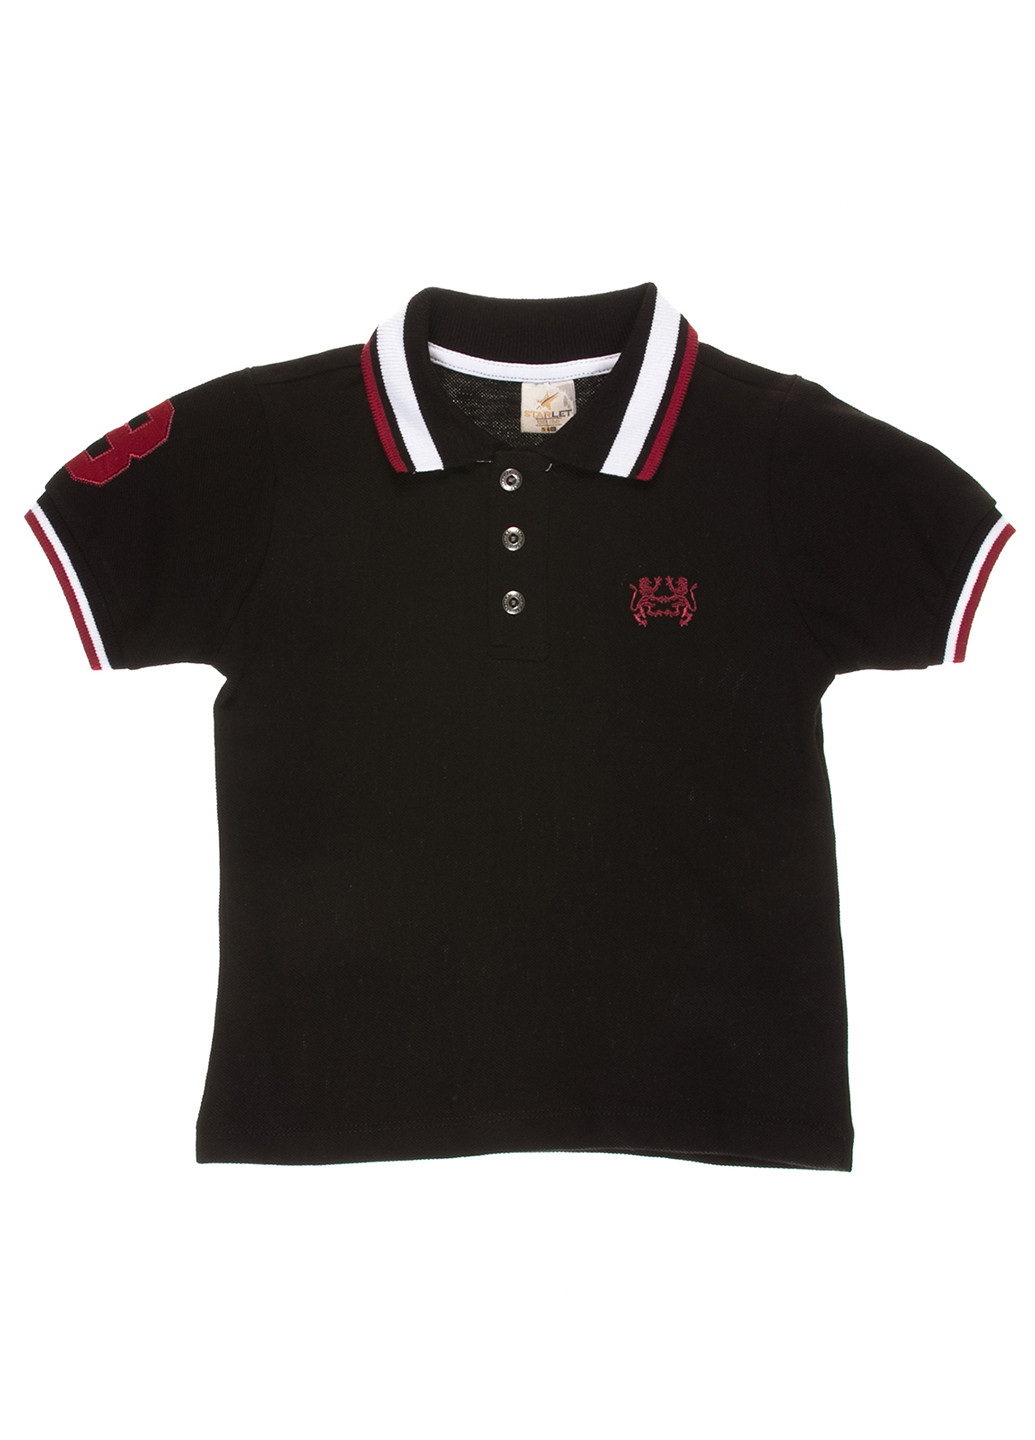 Черная детская футболка-футболка для мальчика Starlet с логотипом